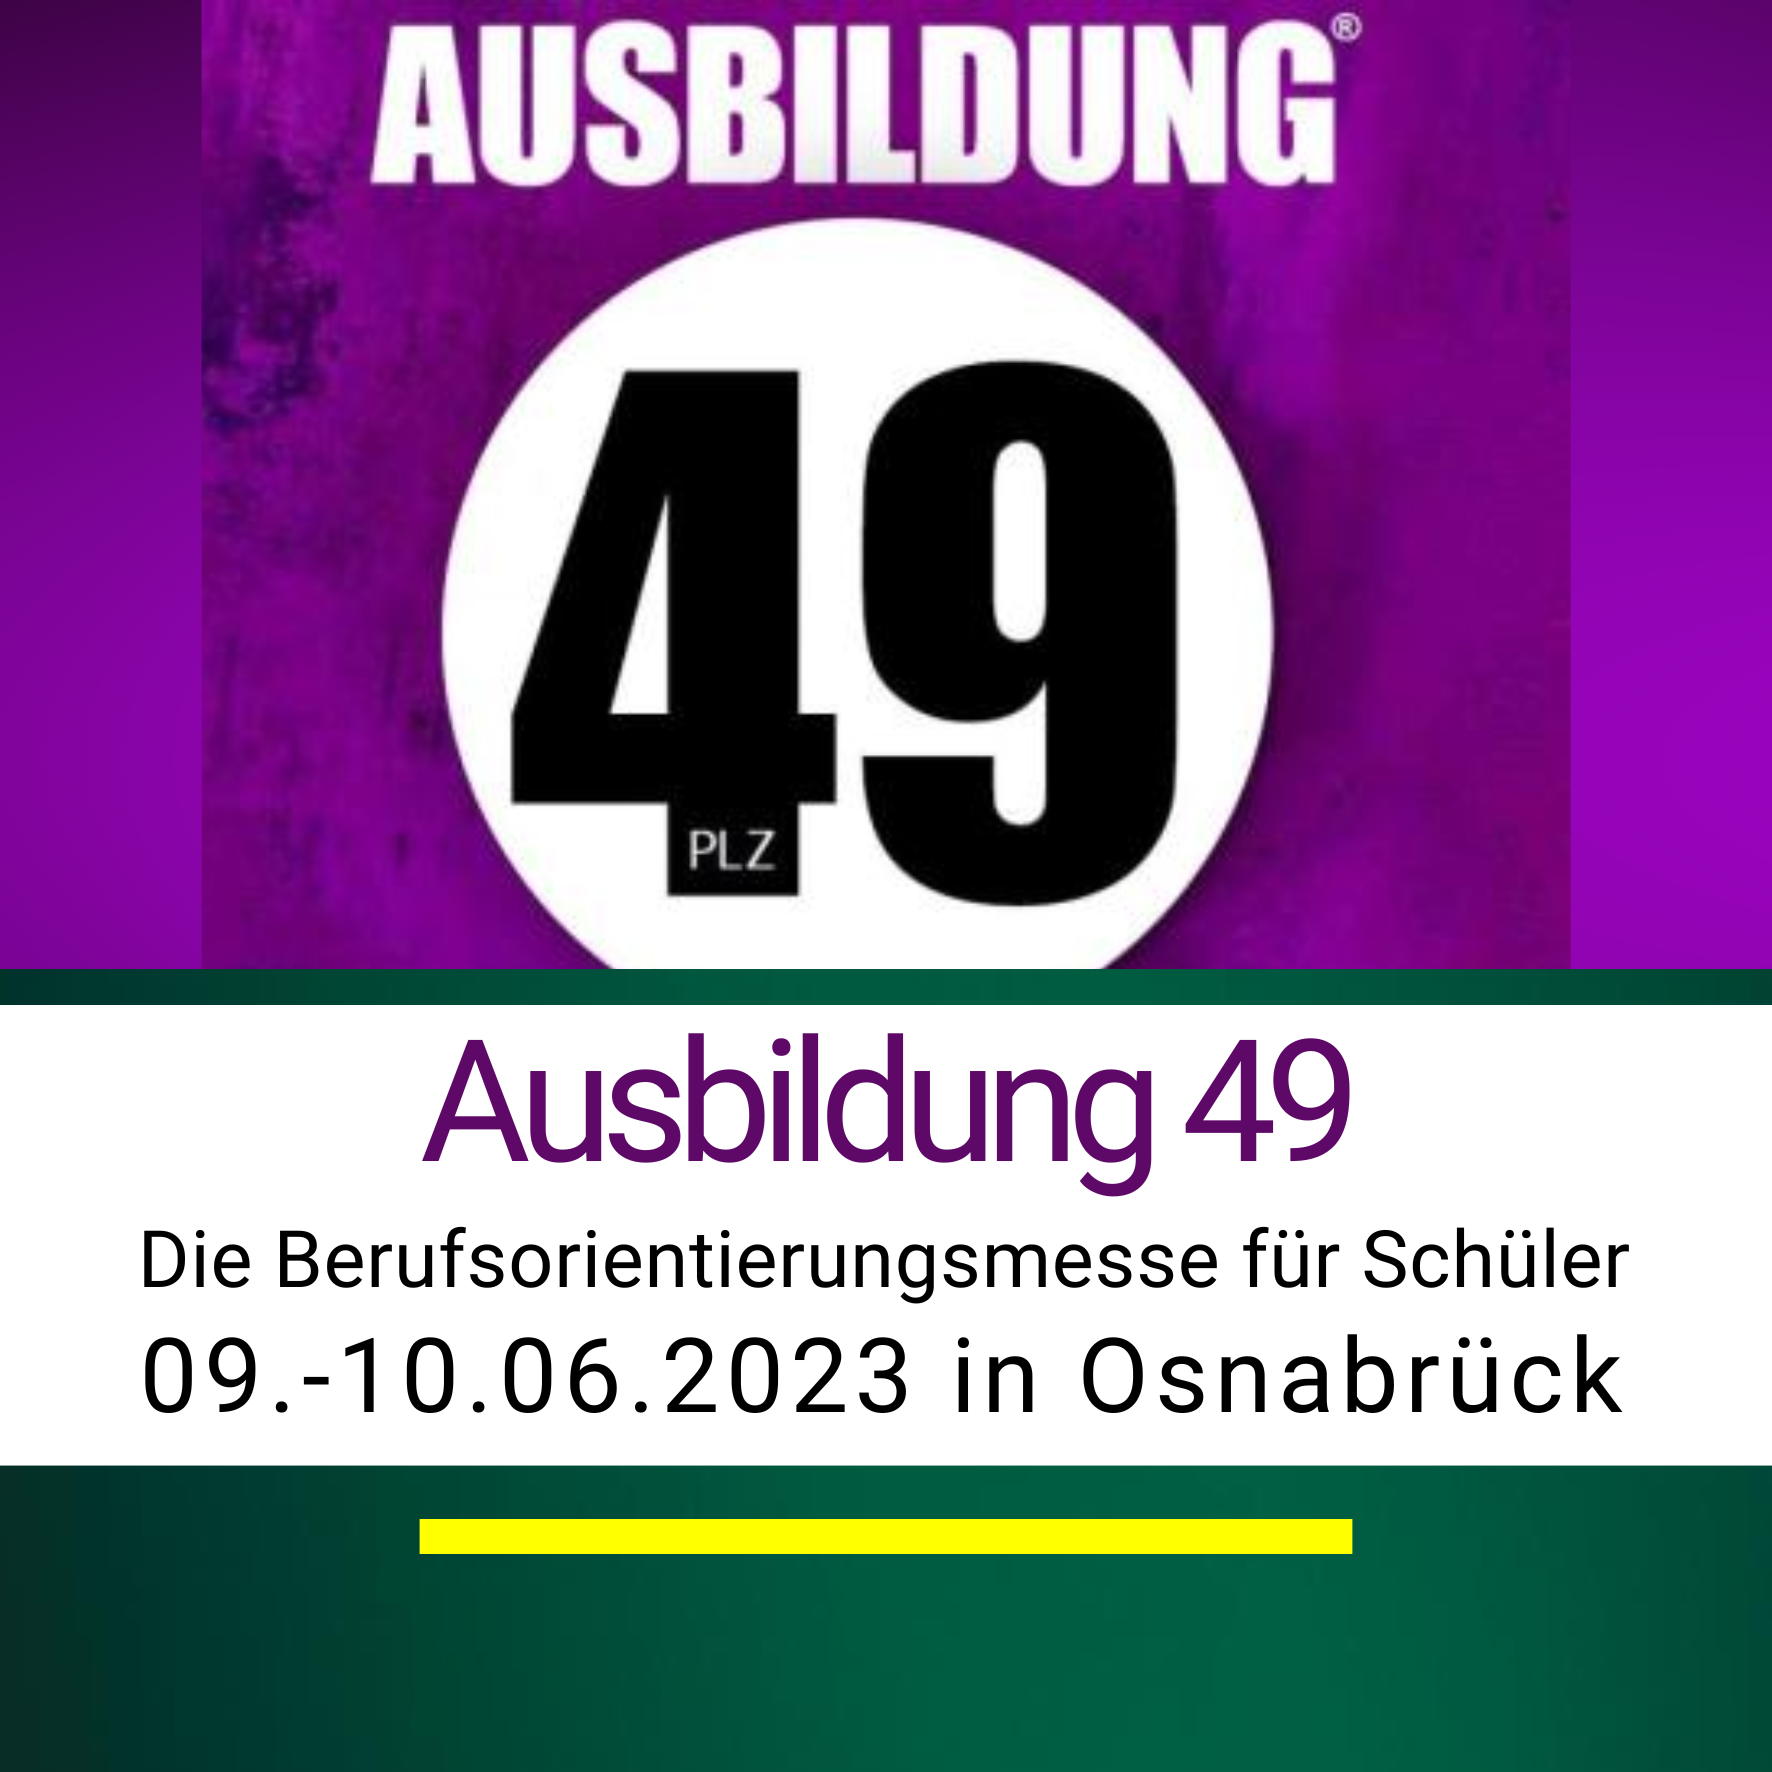 2023-06-09bis10 Ausbildung 49 Osnabrueck